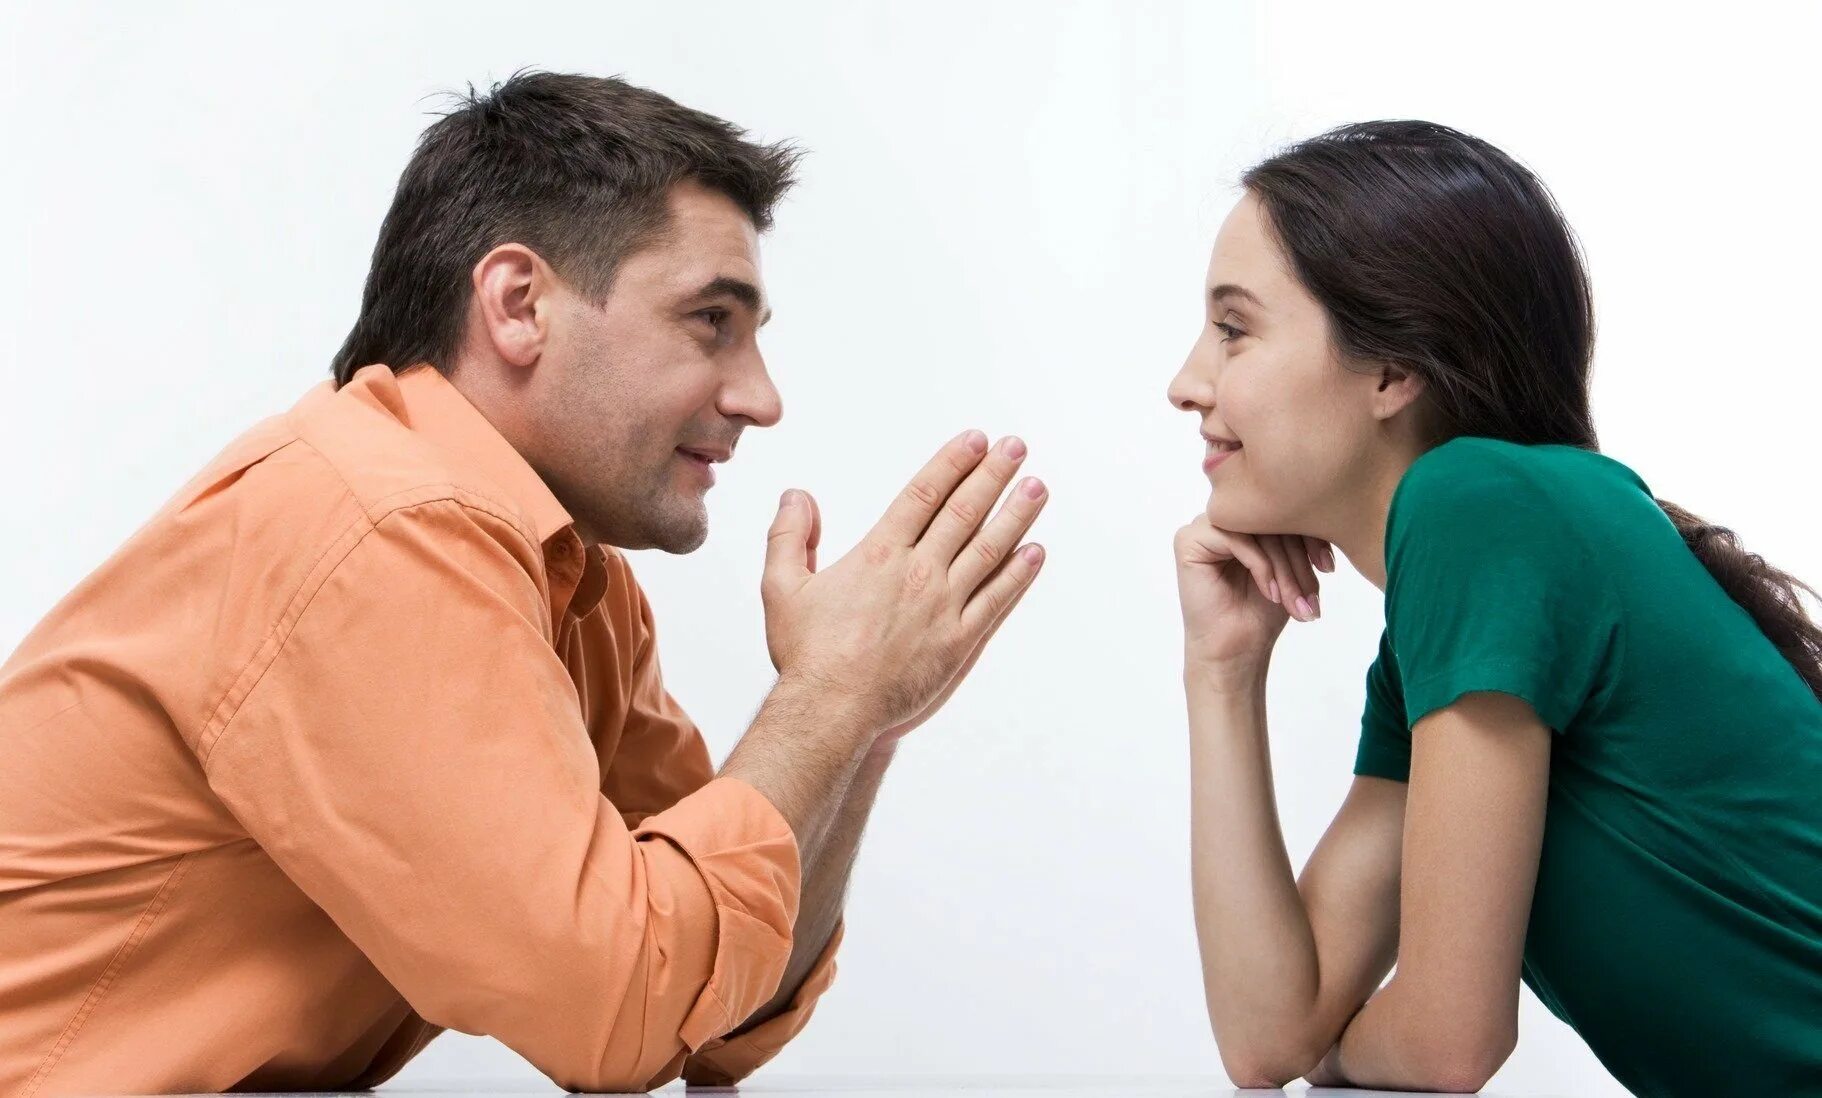 Мужчина просит помочь. Разговор между мужчиной и женщиной. Общение людей. Взаимопонимание в общении. Беседа мужчины и женщины.